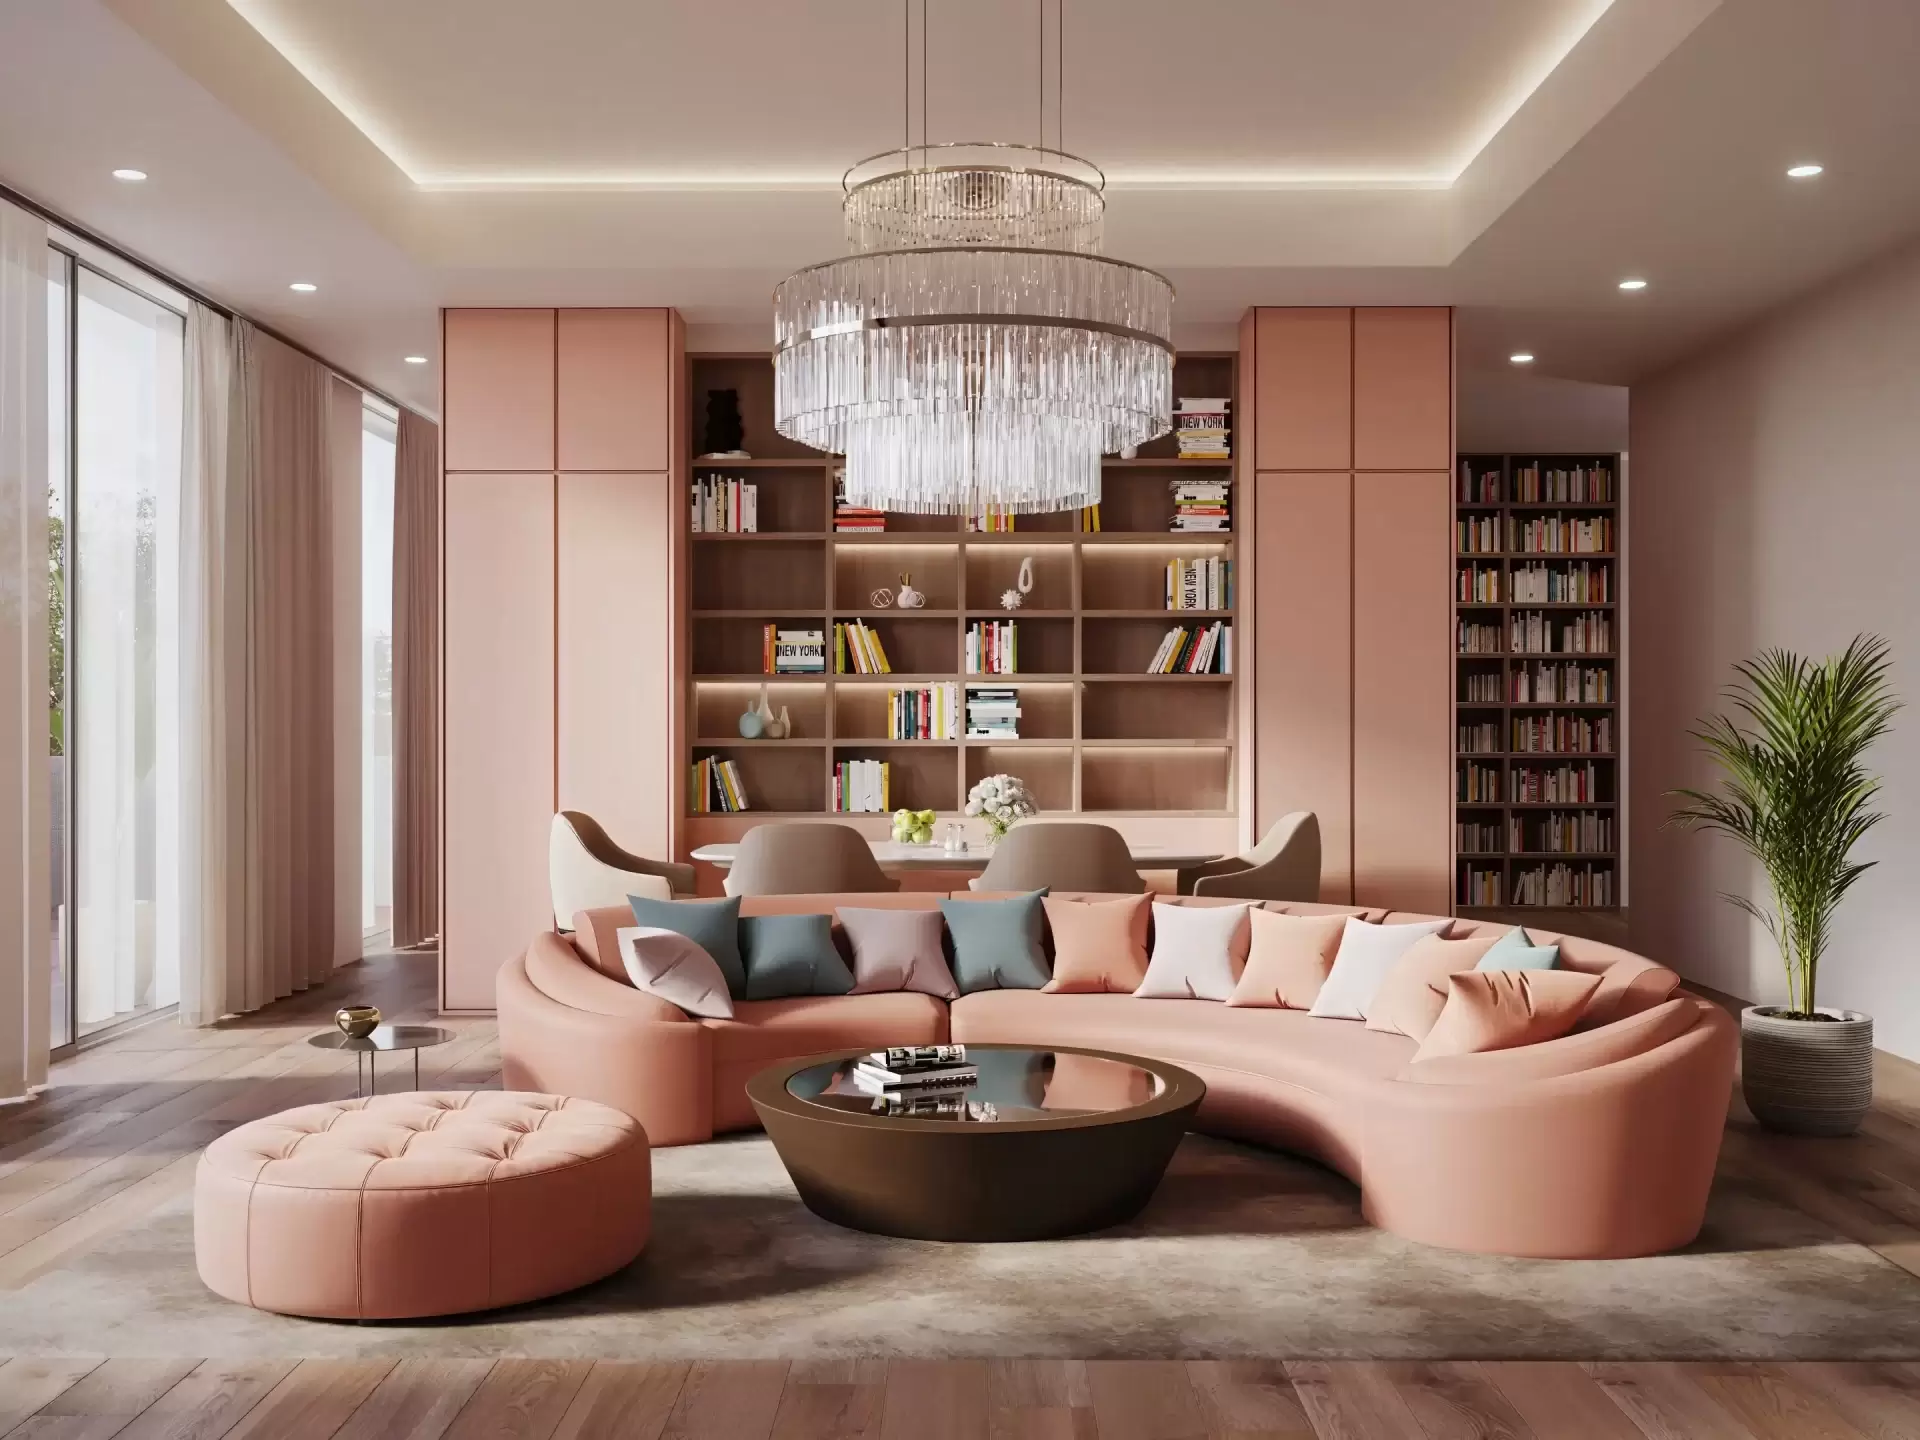 CG Viz Studio's 3D rendering of a luxury living room interior